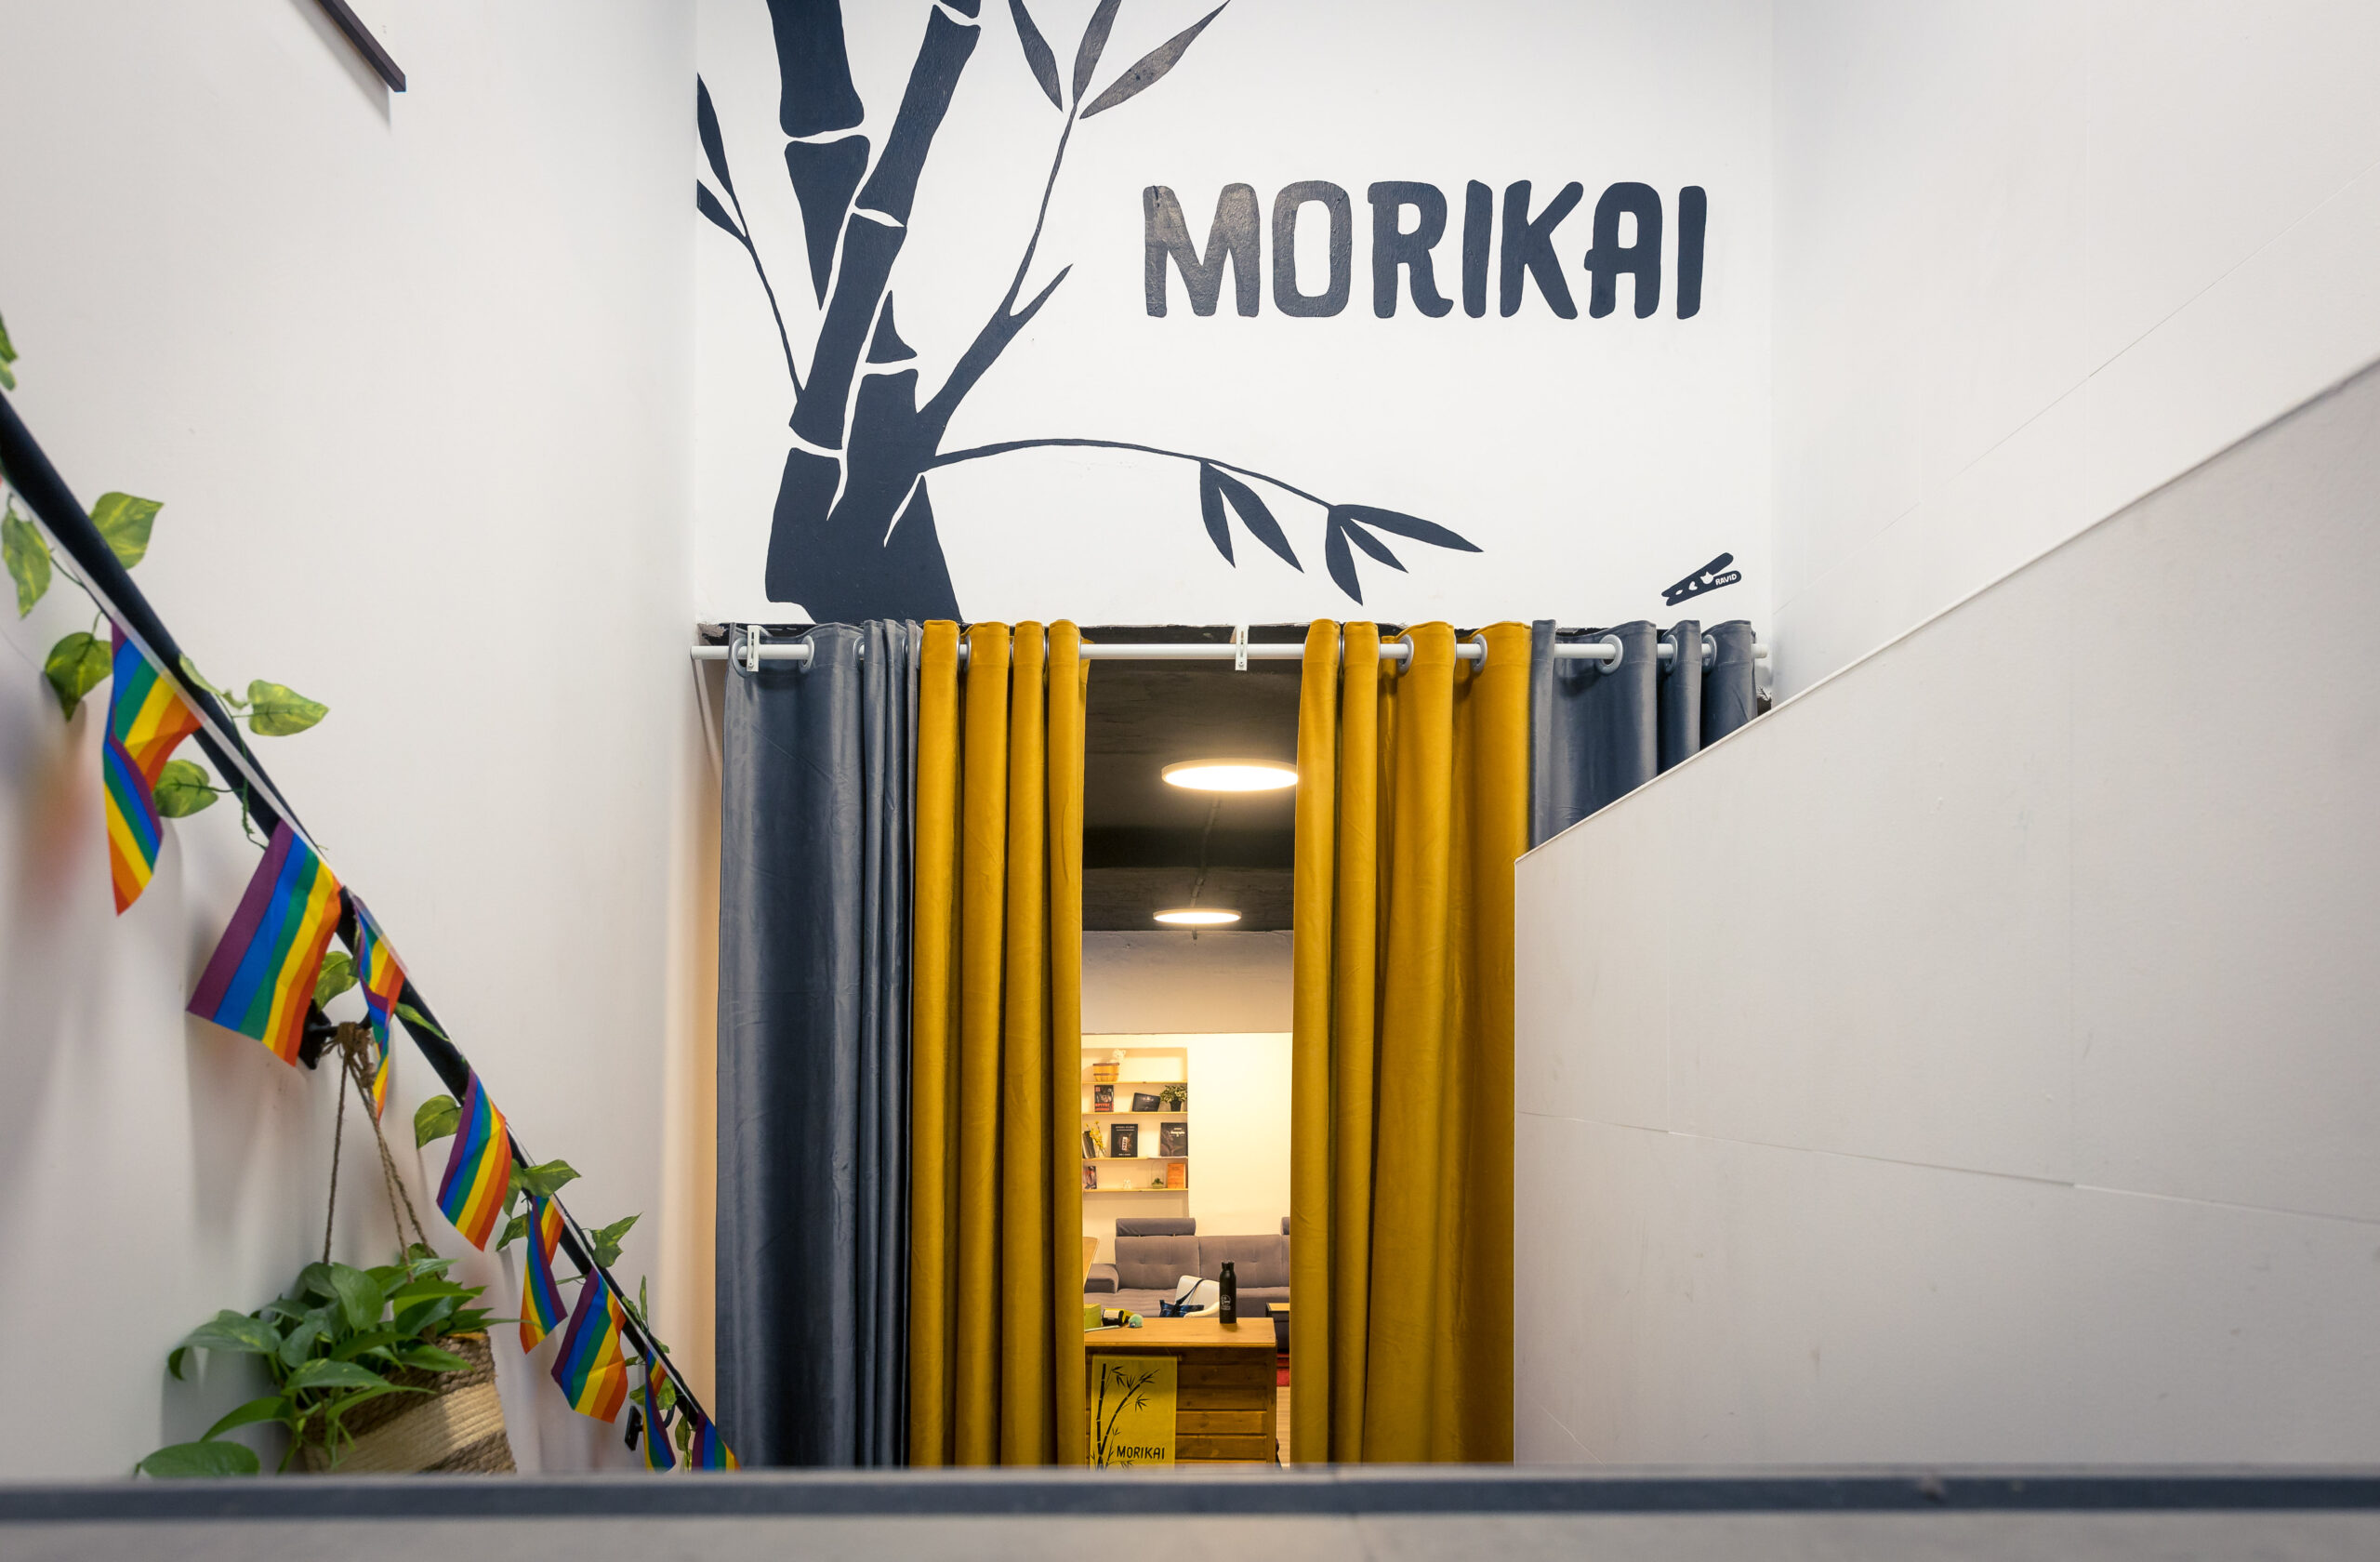 Morikai Studio